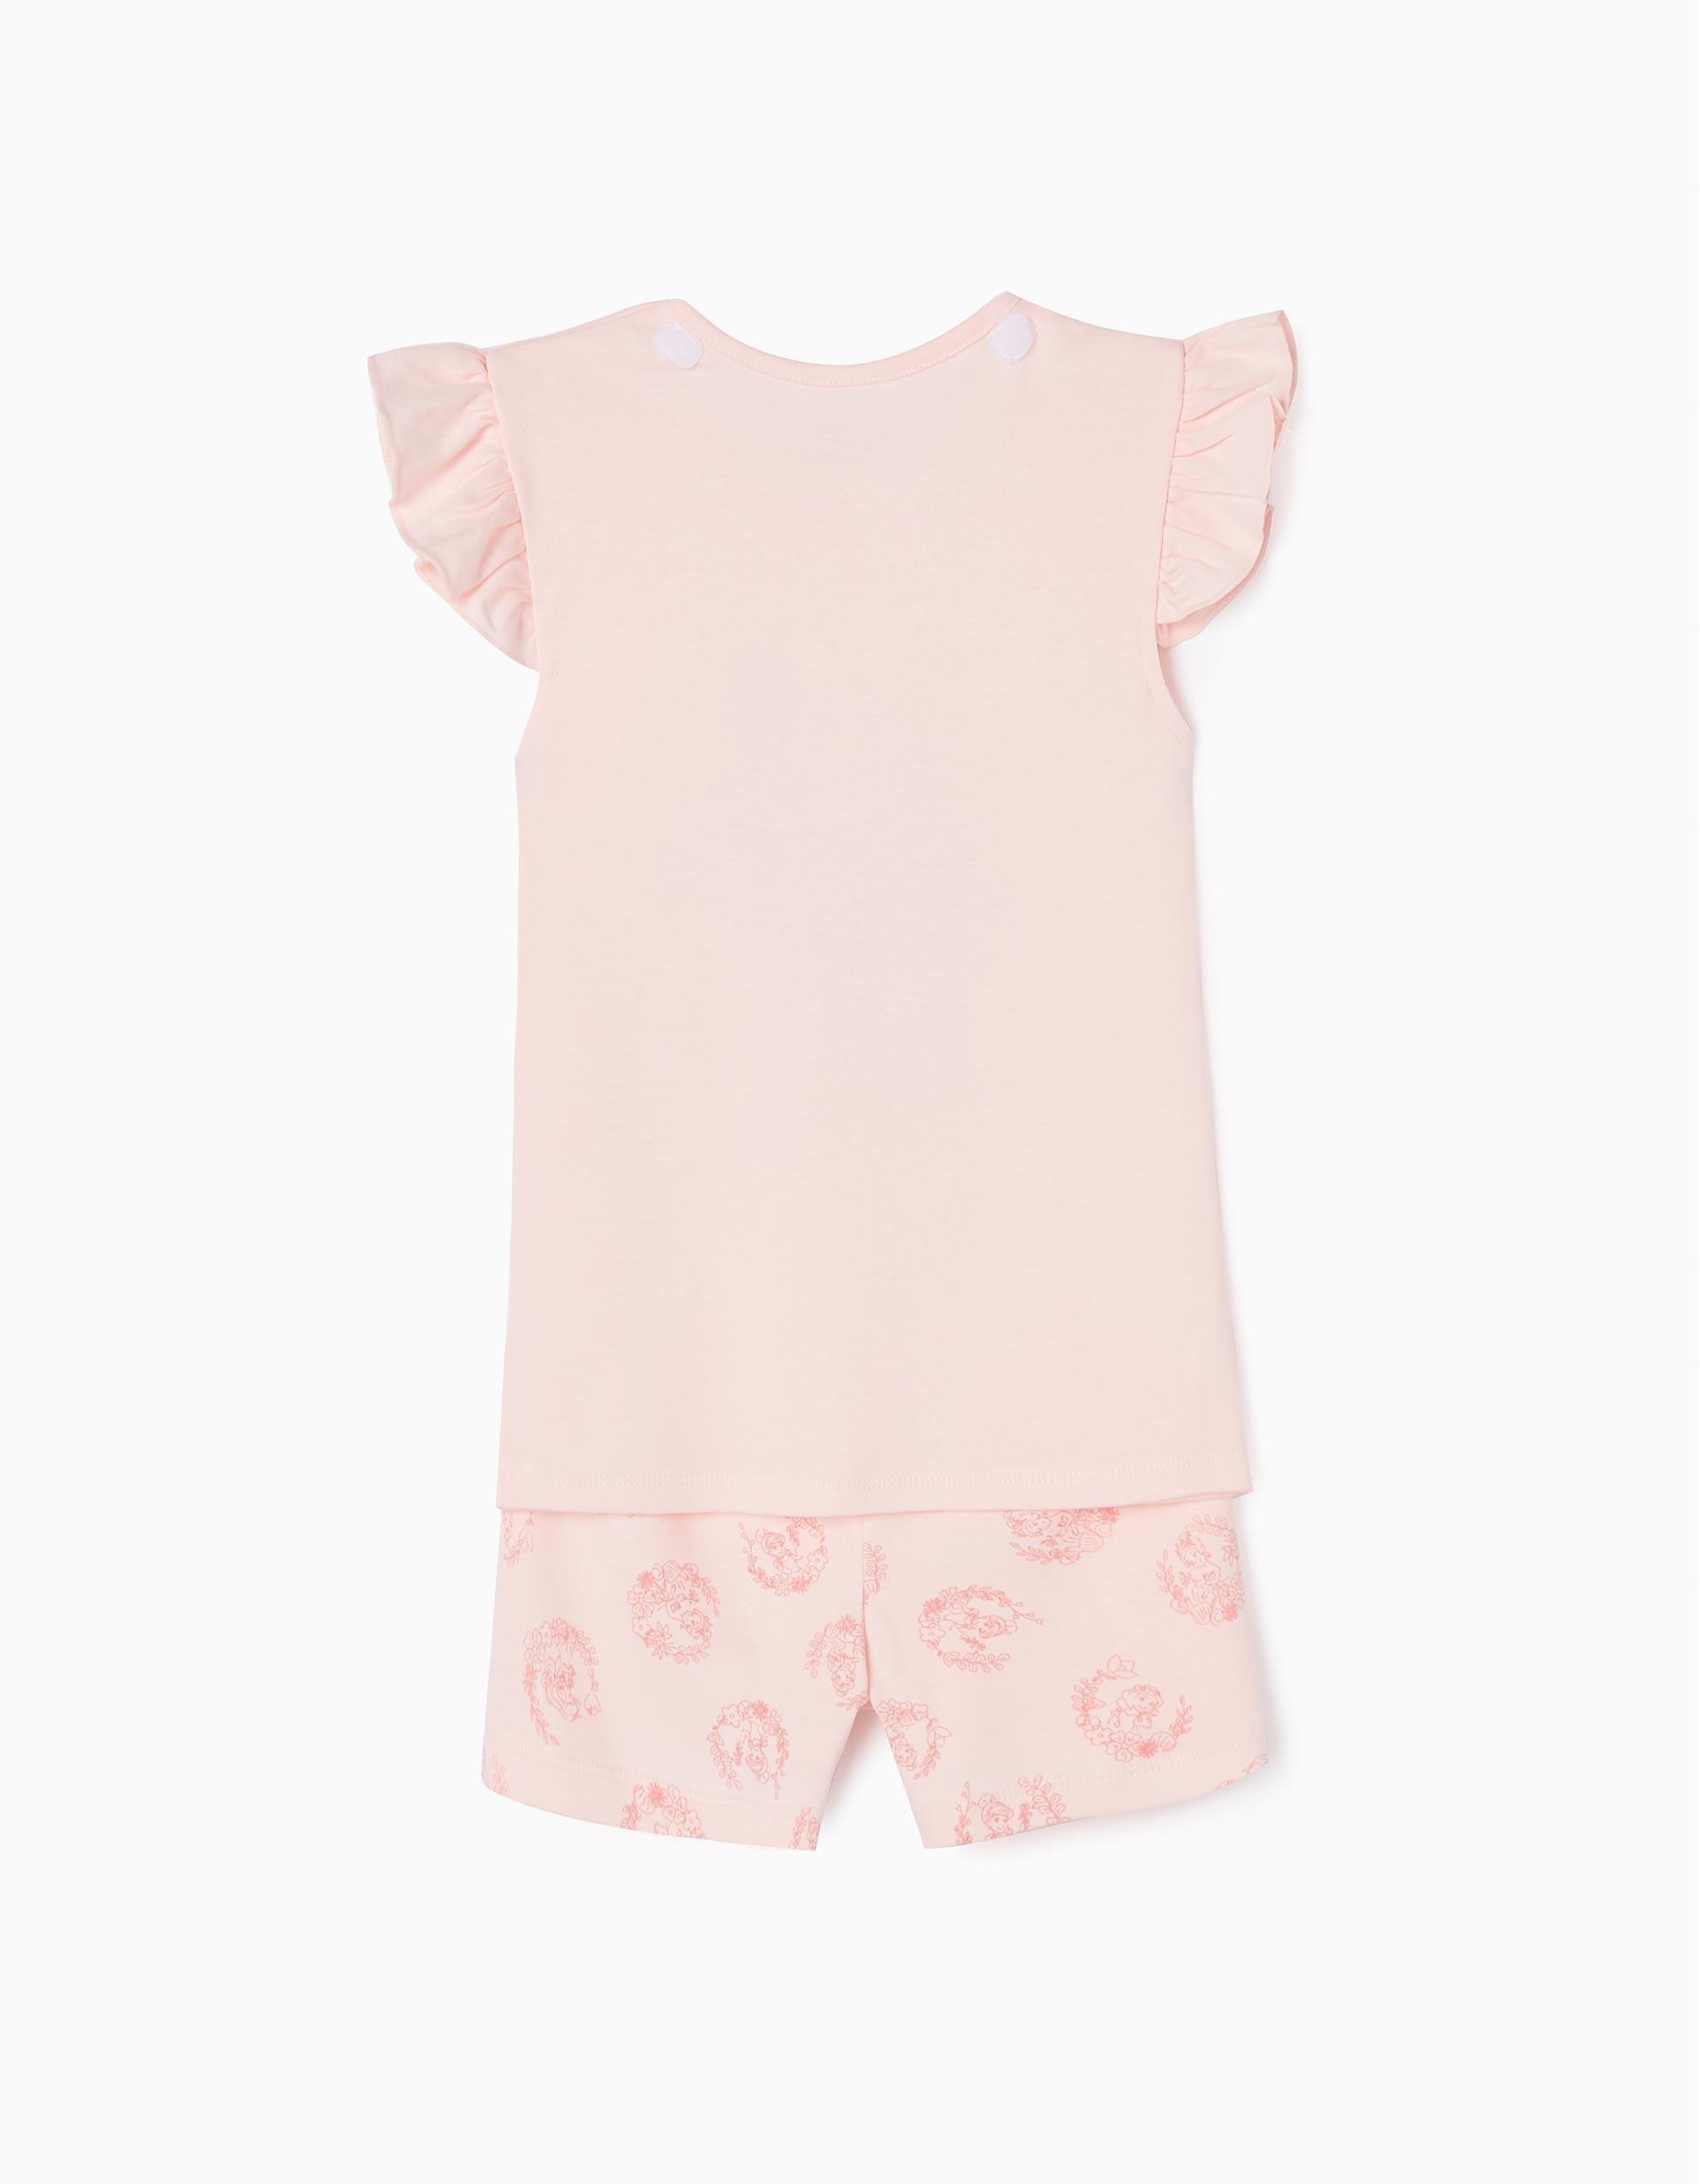 Zippy - Pink Short Removable Cape Pyjamas, Kids Girls